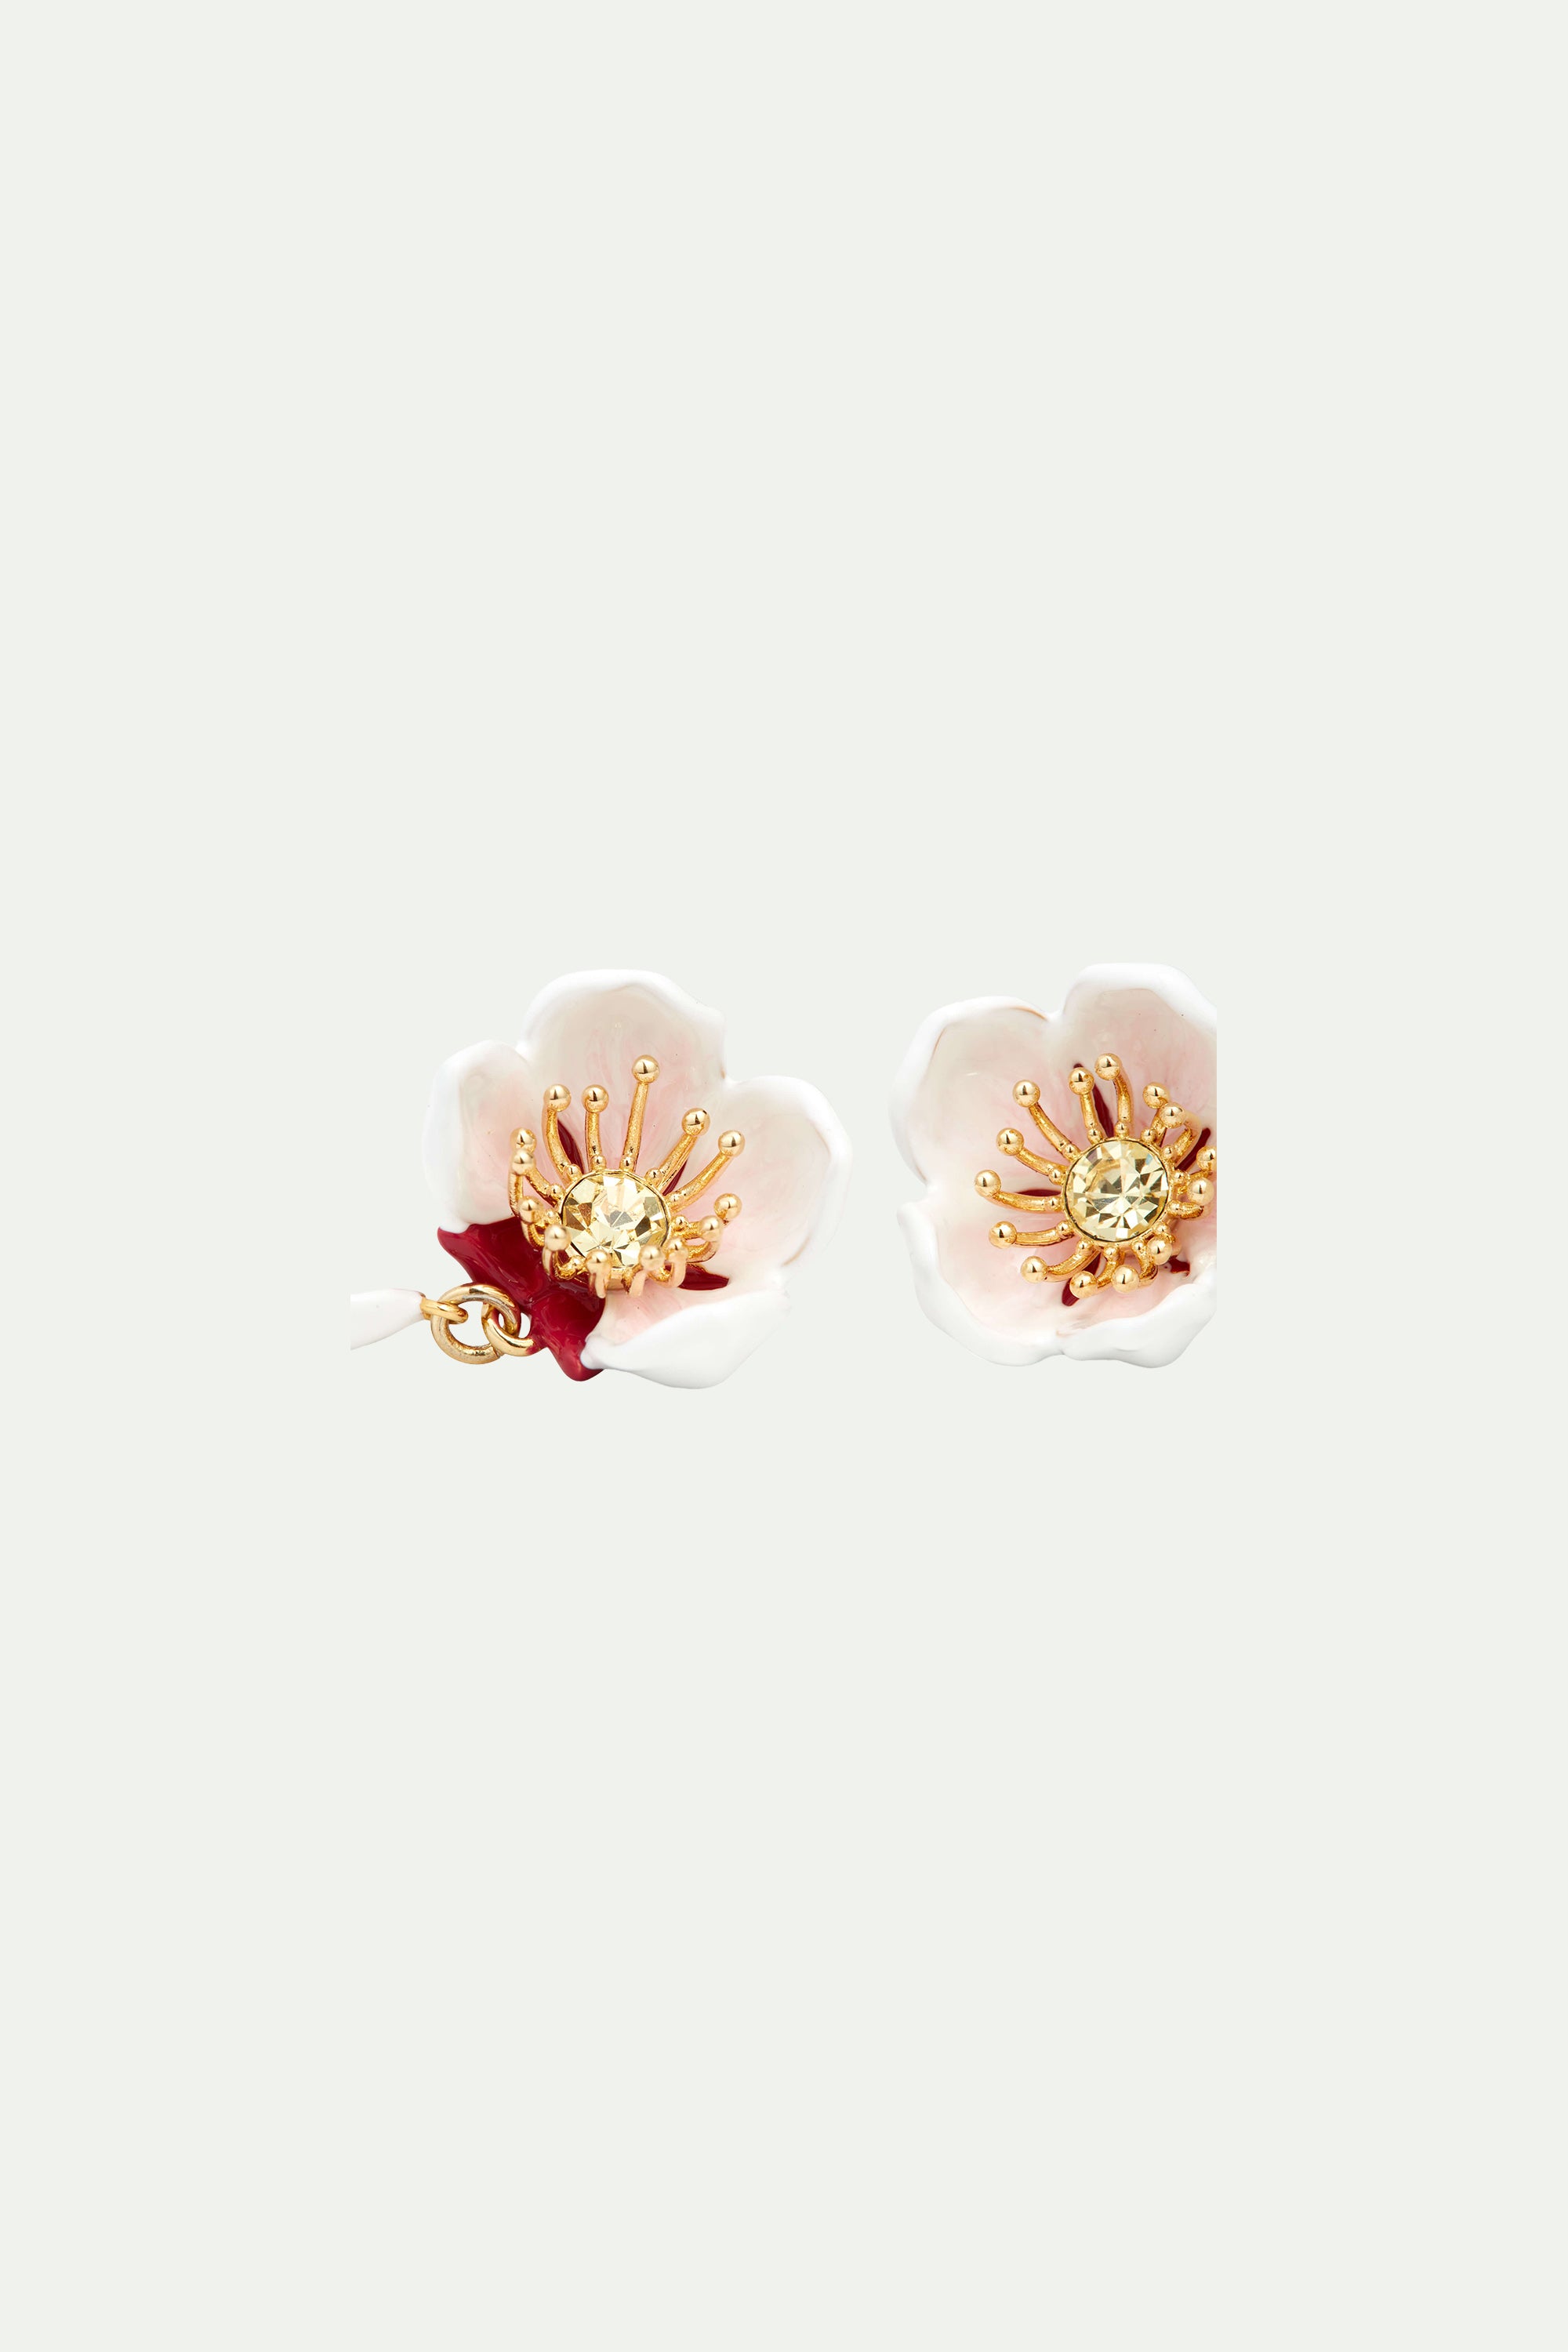 Pendiente bolitas asimétricos Flor Blanca de Cerezo